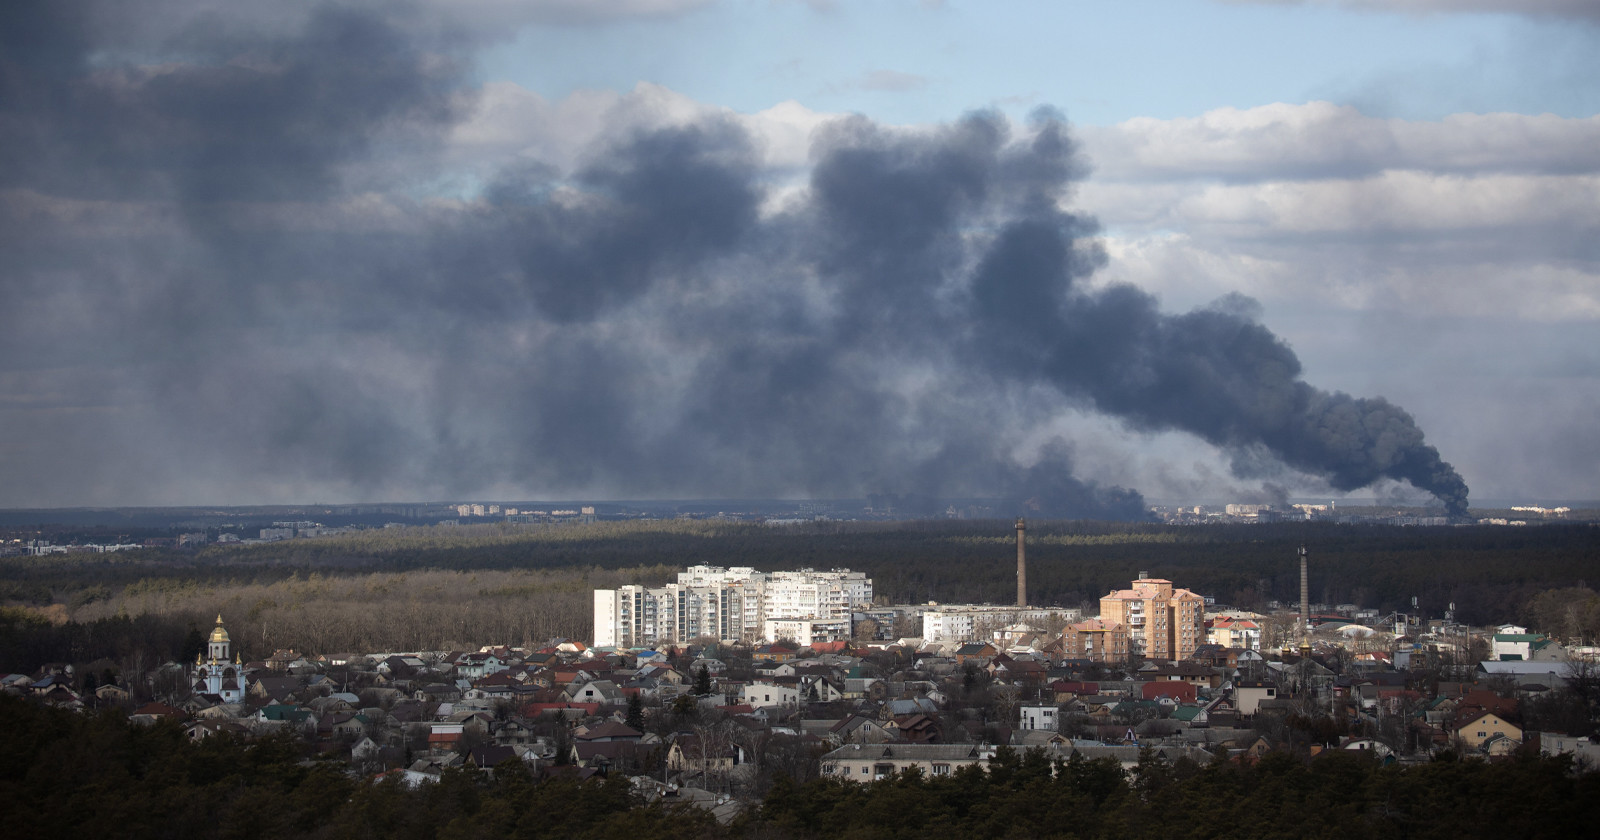  photojournalist lynsey addario captures unfolding war ukraine 